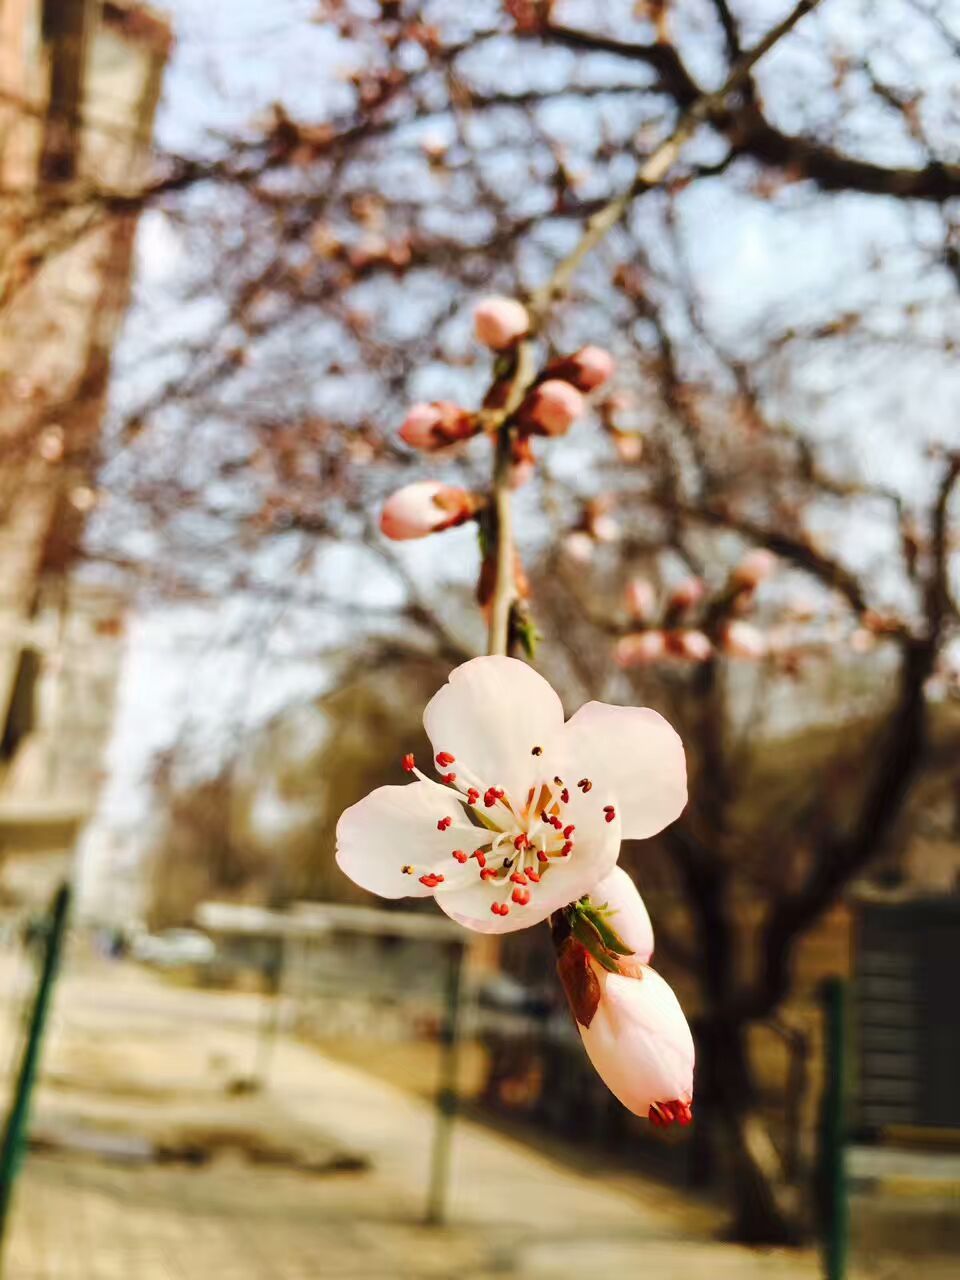 春天花会开 / Spring flowers